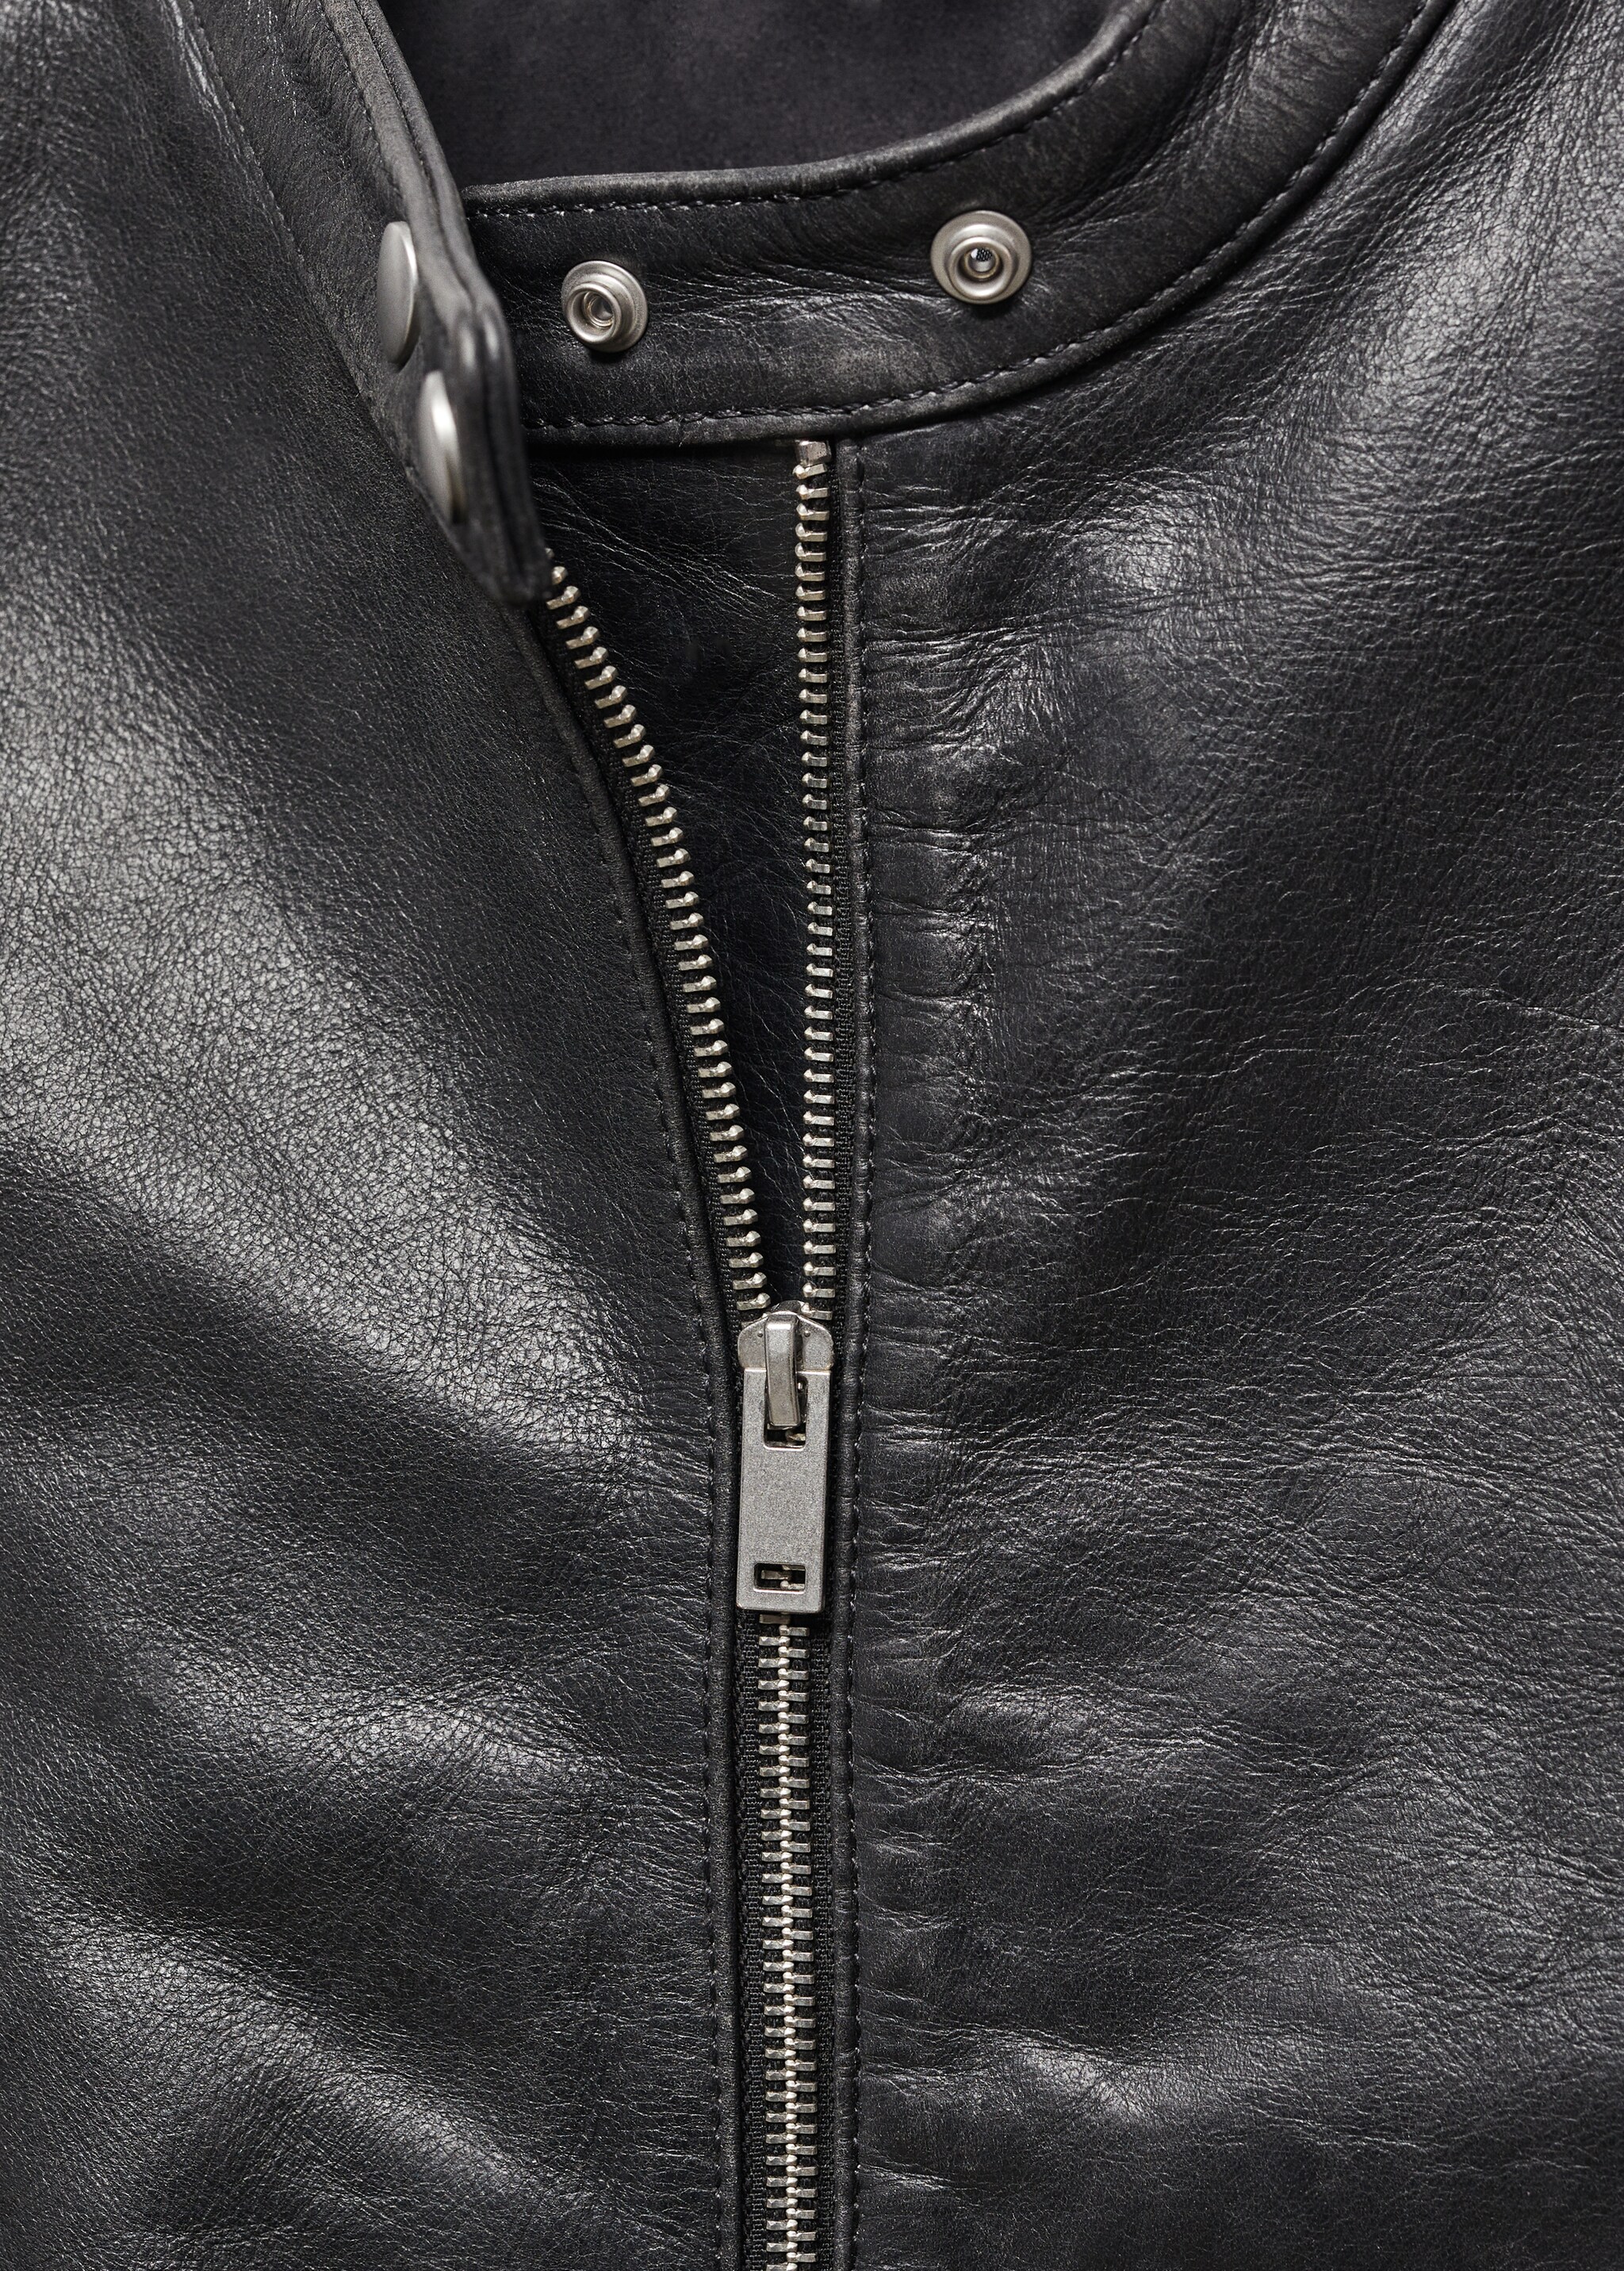 Jacke aus 100 % Leder - Detail des Artikels 8